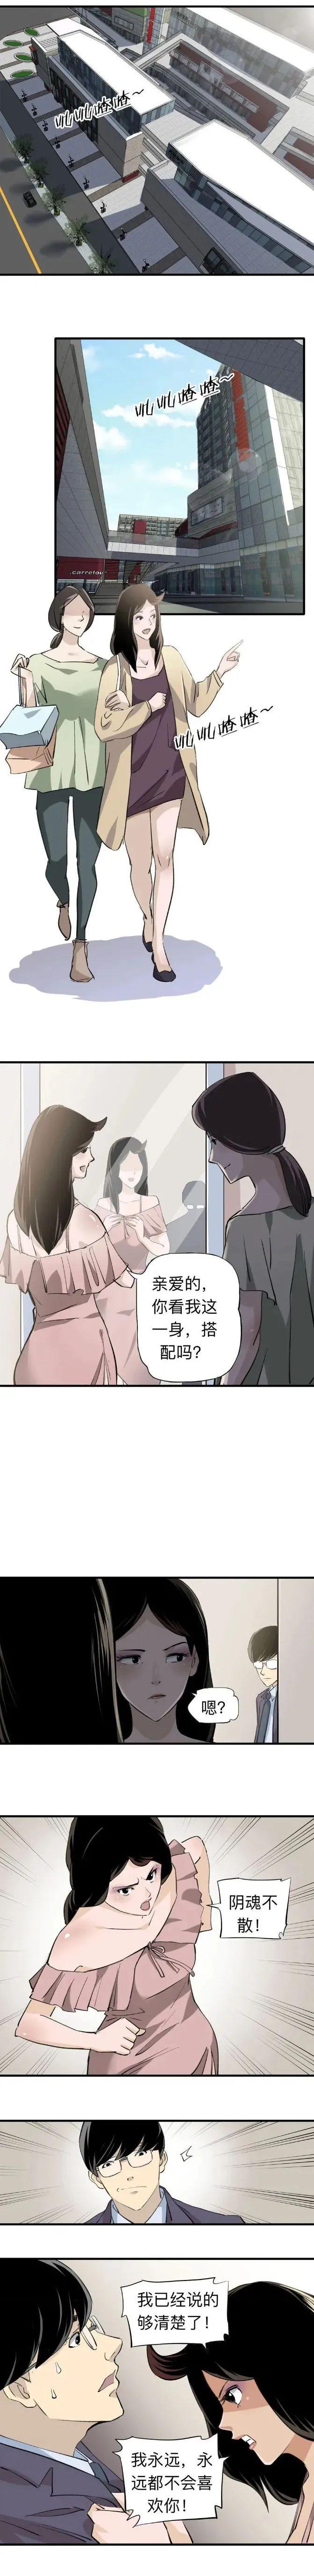 【短篇漫画】性感女教练的追求者_解说